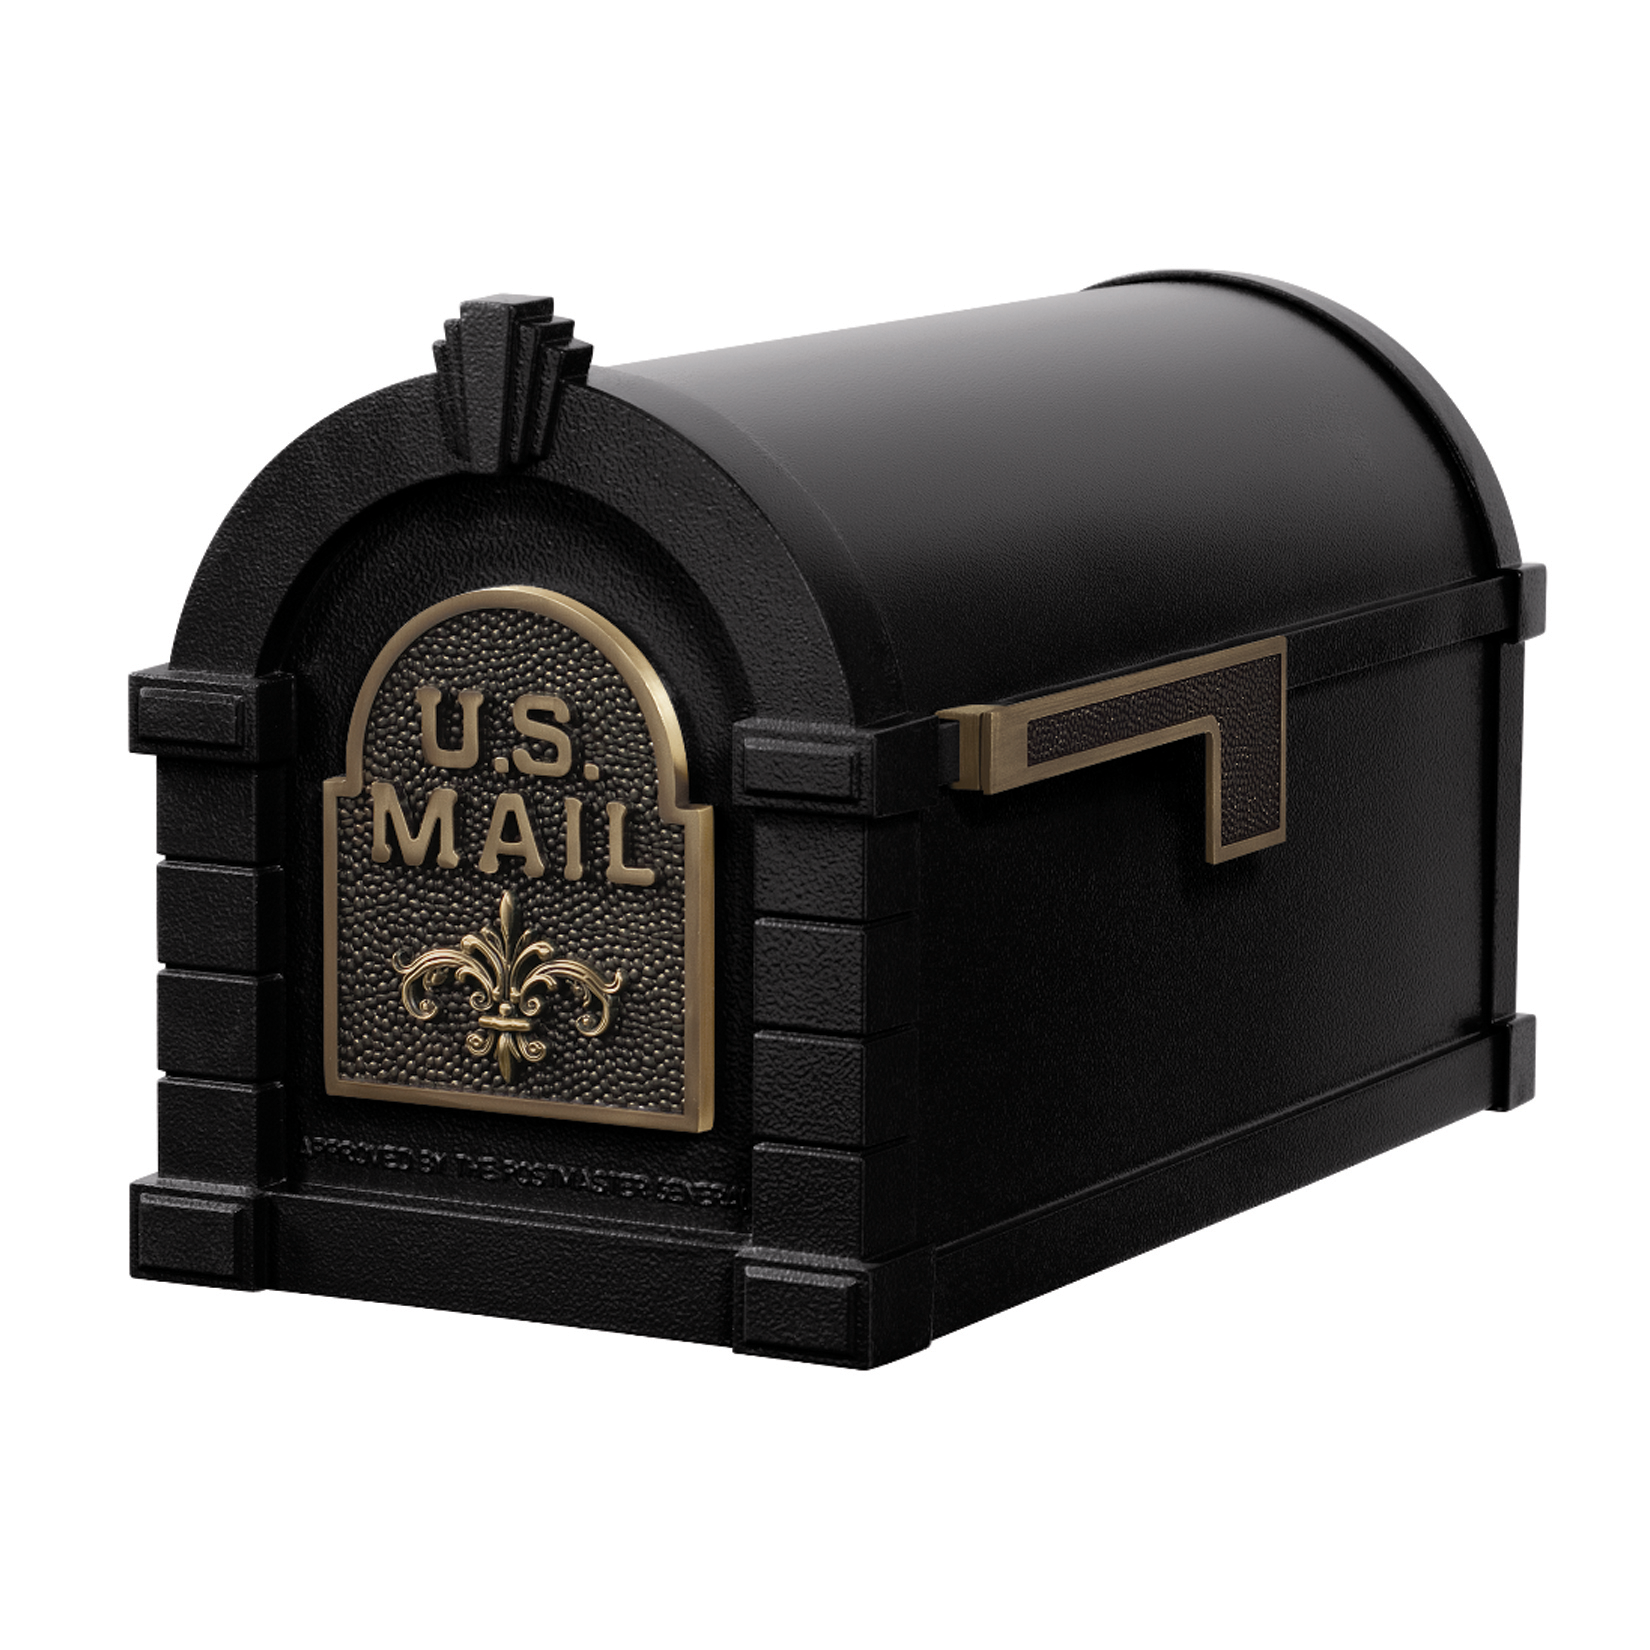 Gaines Fleur De Lis Keystone Mailboxes<br />Black with Antique Bronze